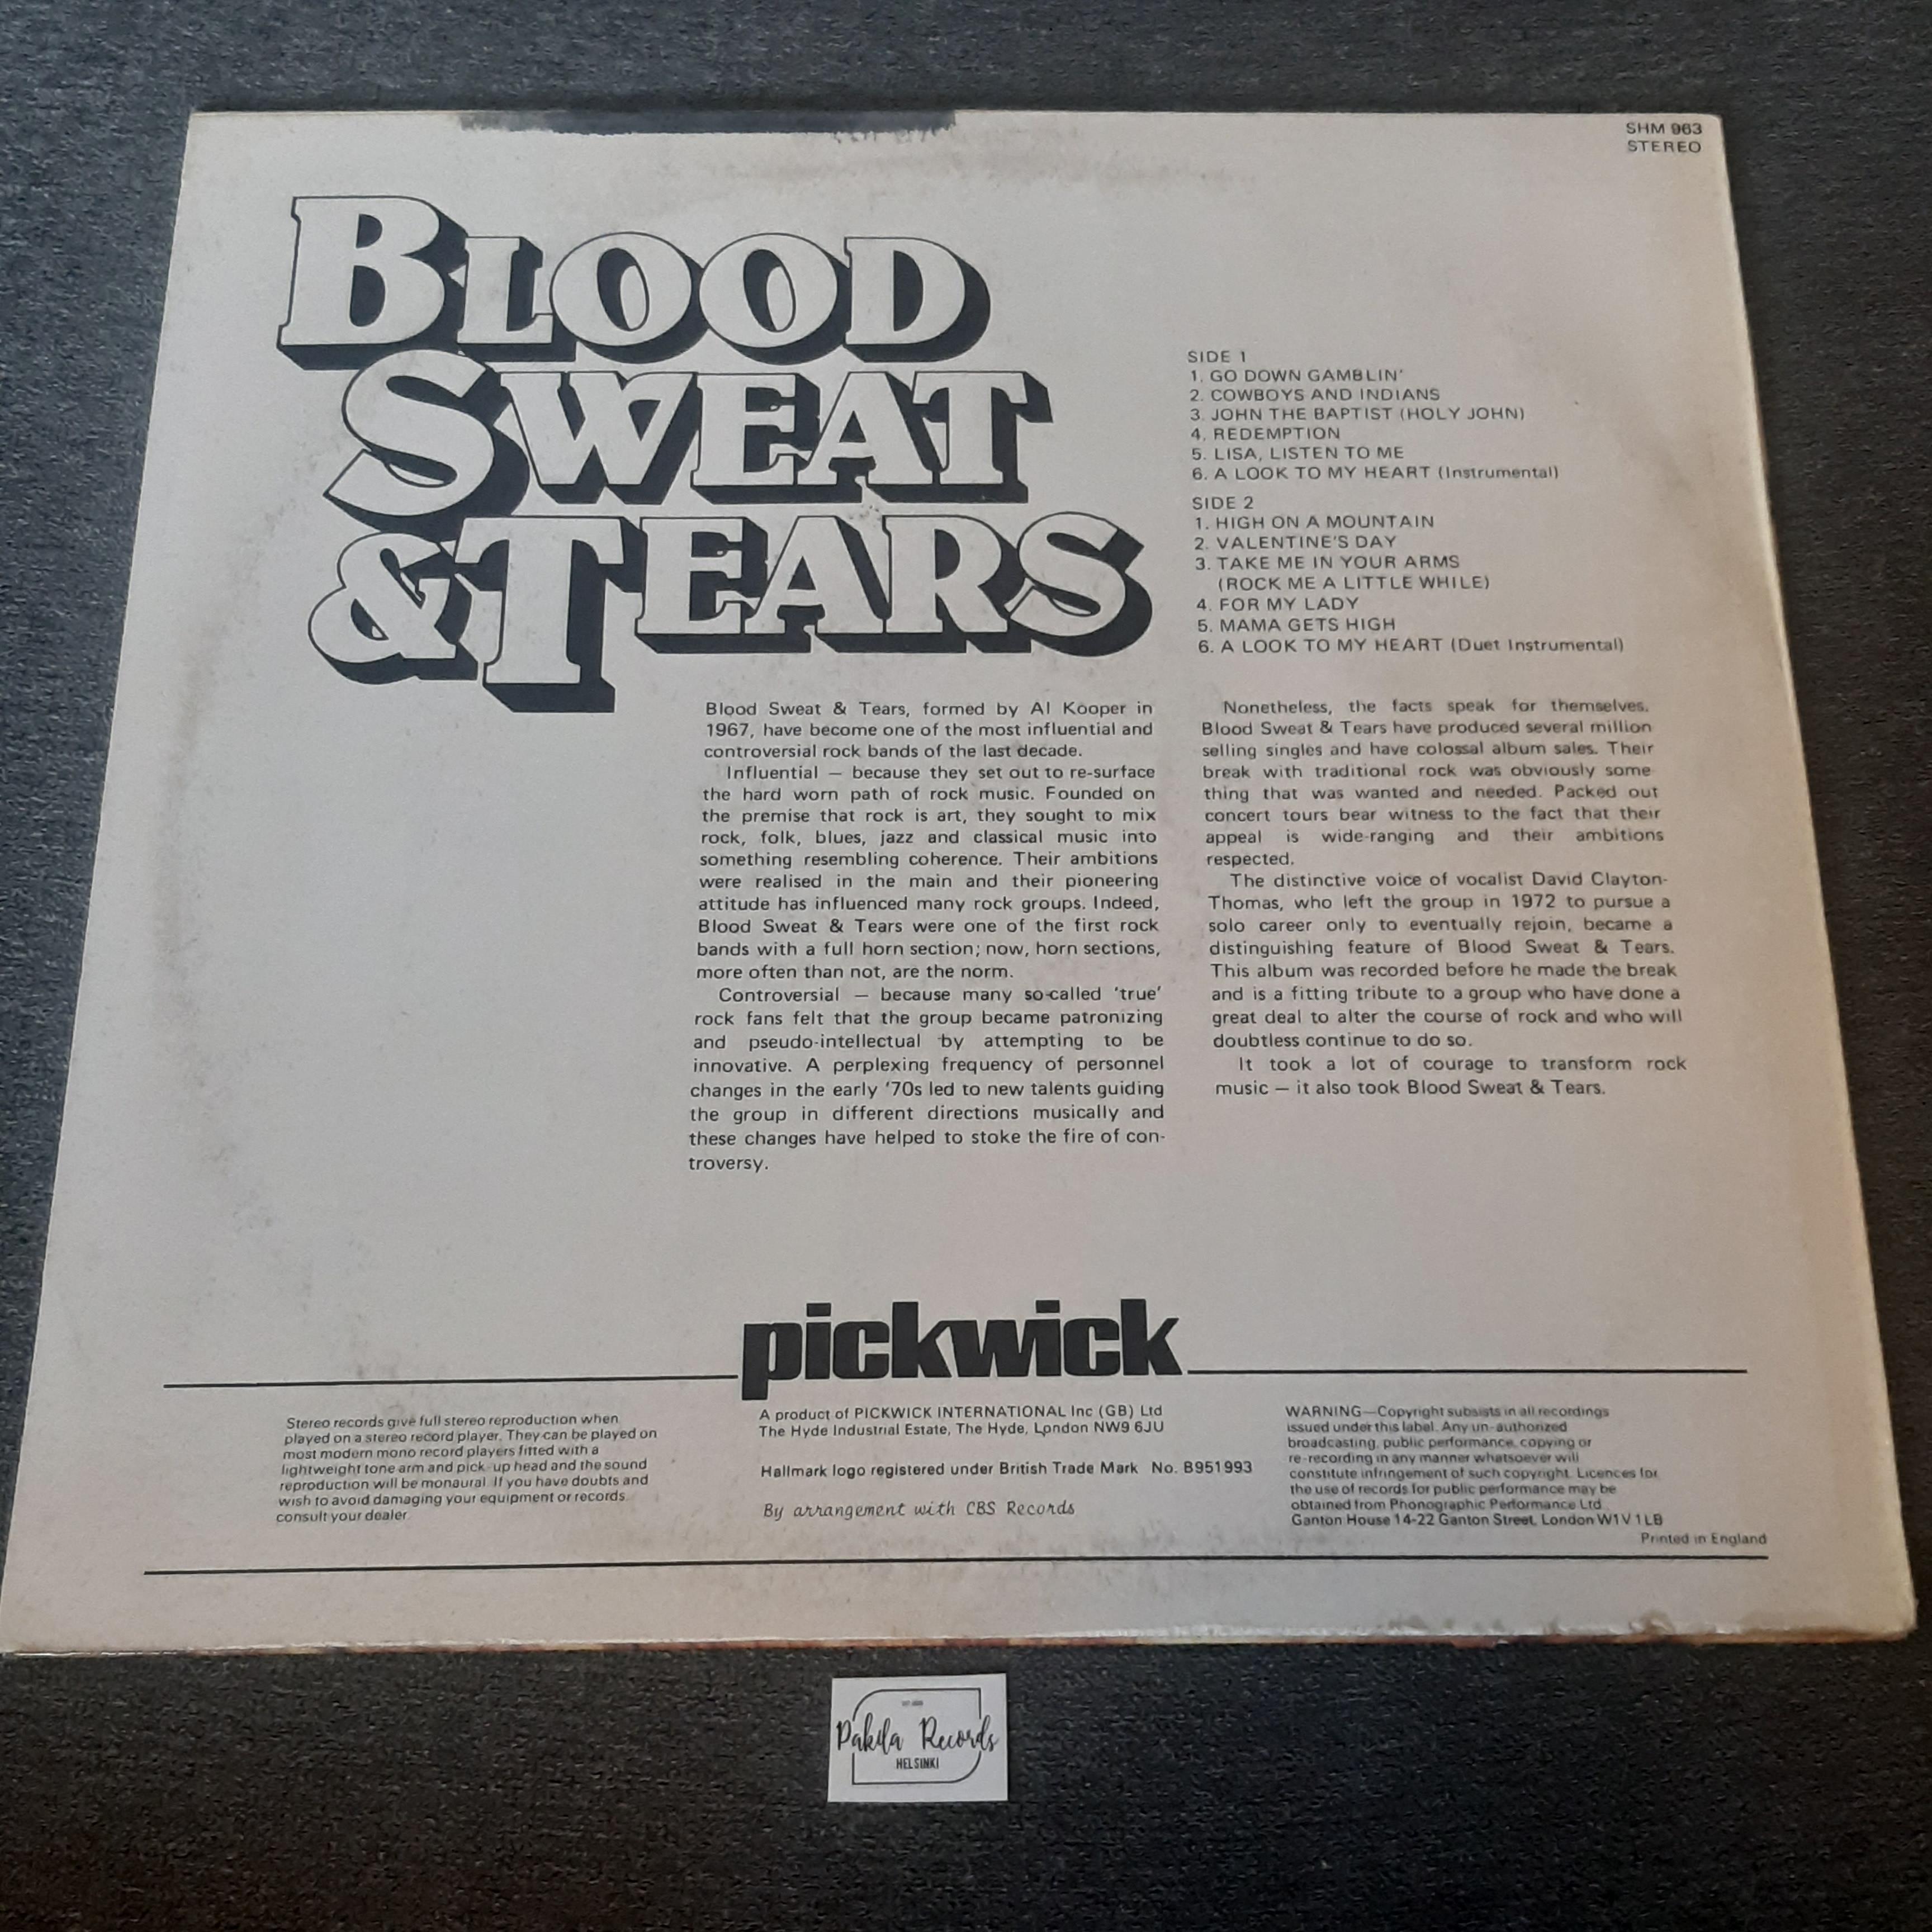 Blood, Sweat And Tears - Blood, Sweat And Tears - LP (käytetty)